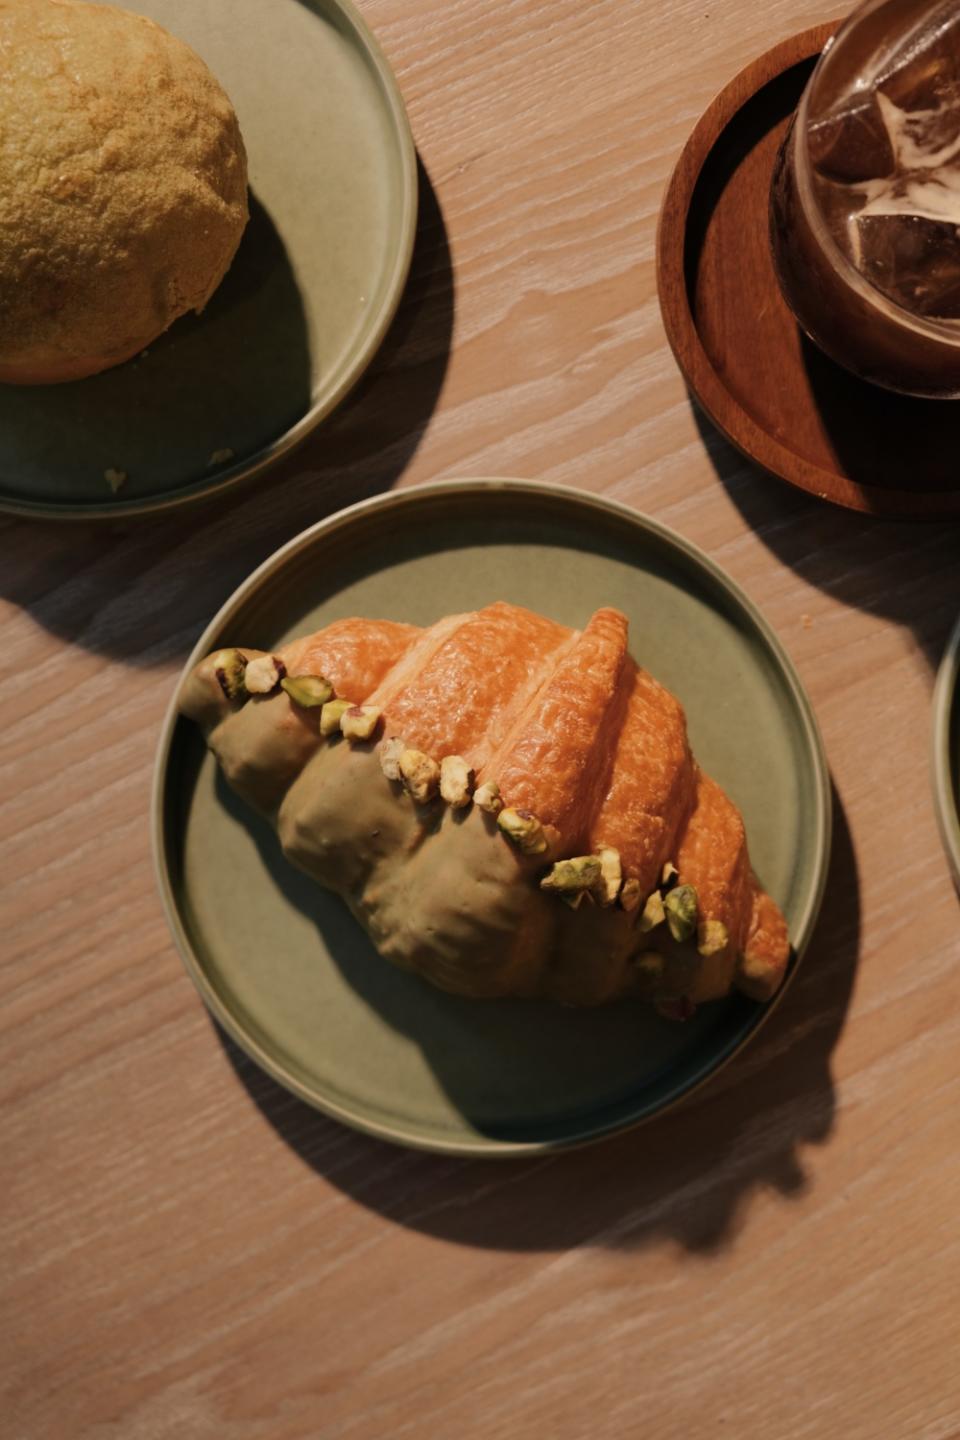 香港首家手工純素烘焙店 MAYA 登陸太古坊 必食純素糕點 蛋撻、斑蘭波蘿包及牛角包